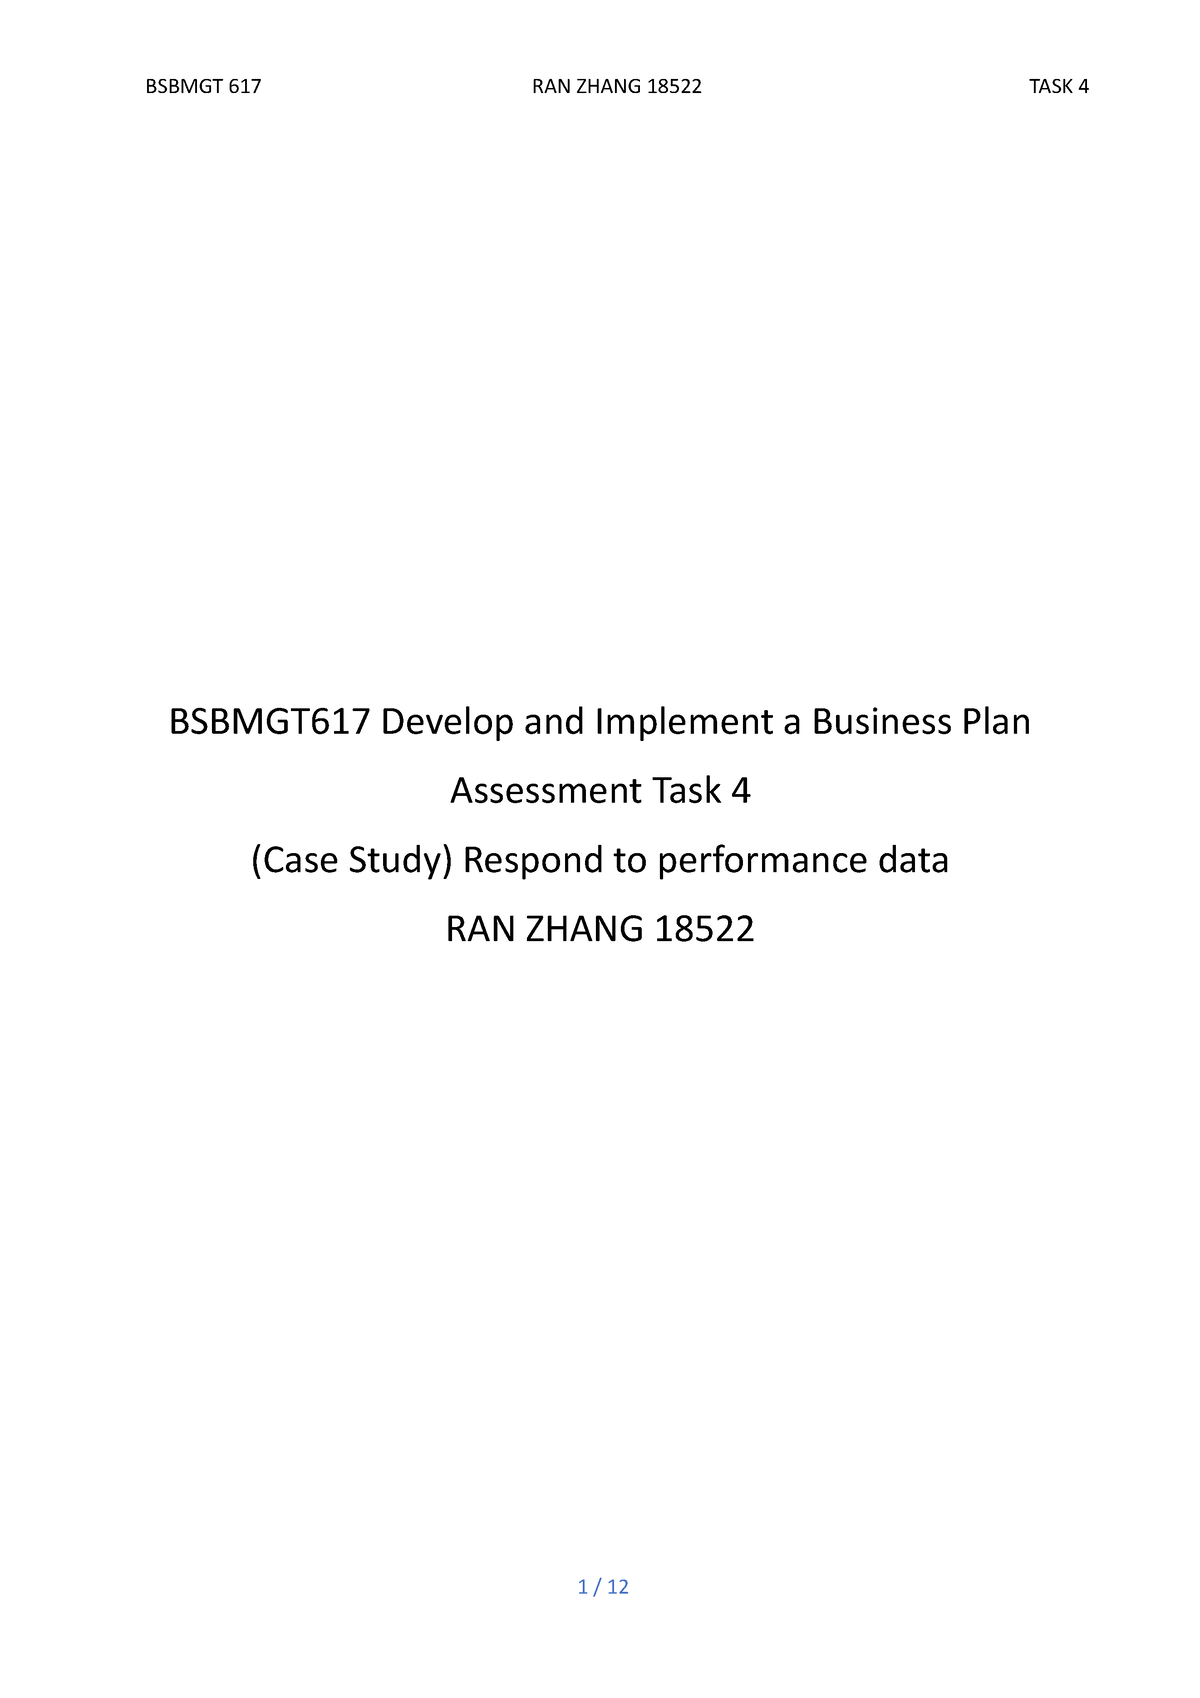 bsbmgt617 develop & implement a business plan